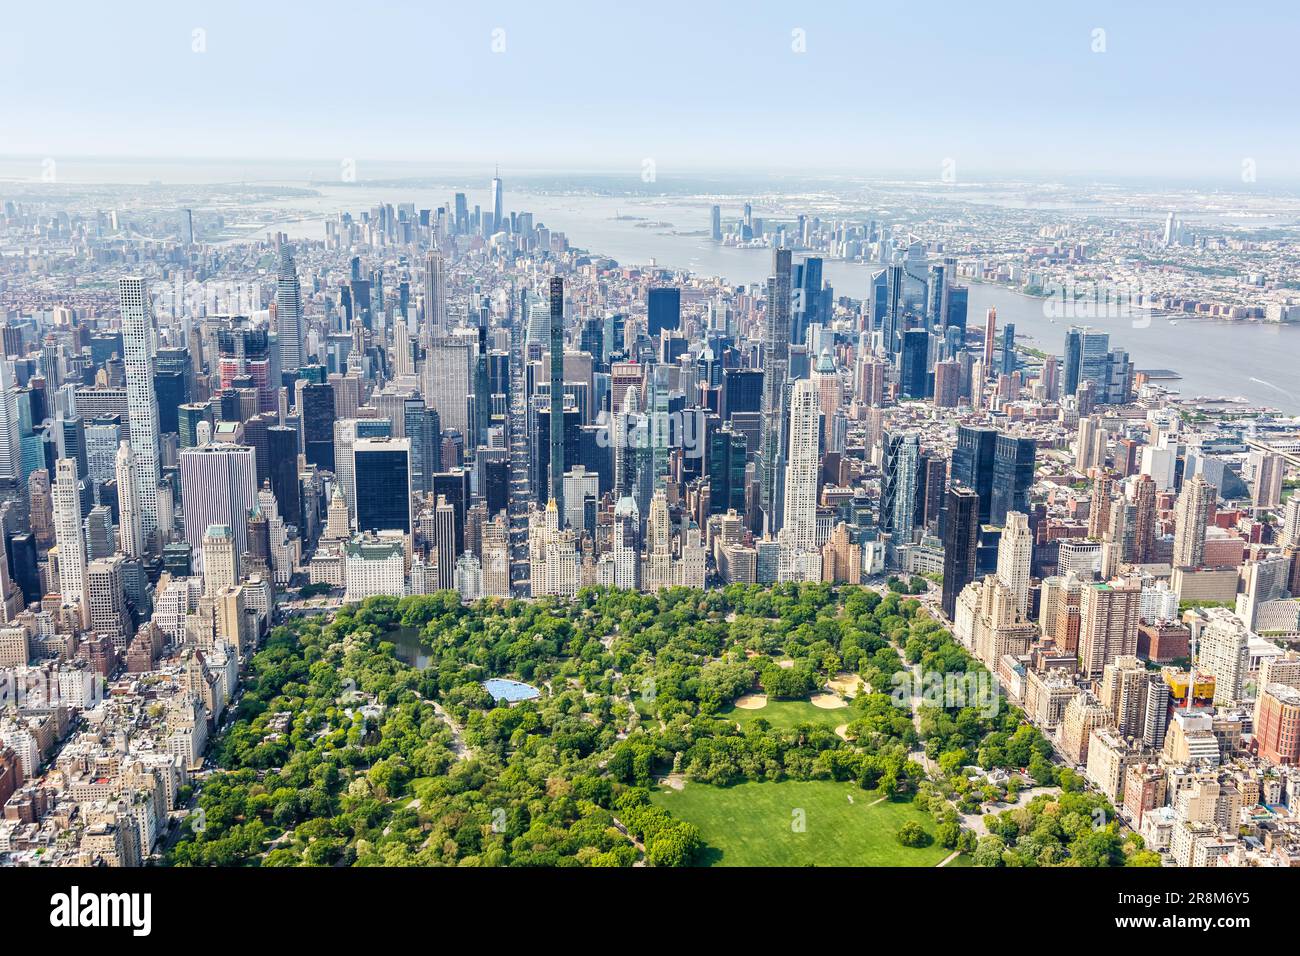 New York City skyline grattacielo di Manhattan immobiliare con Central Park vista aerea foto negli Stati Uniti Foto Stock